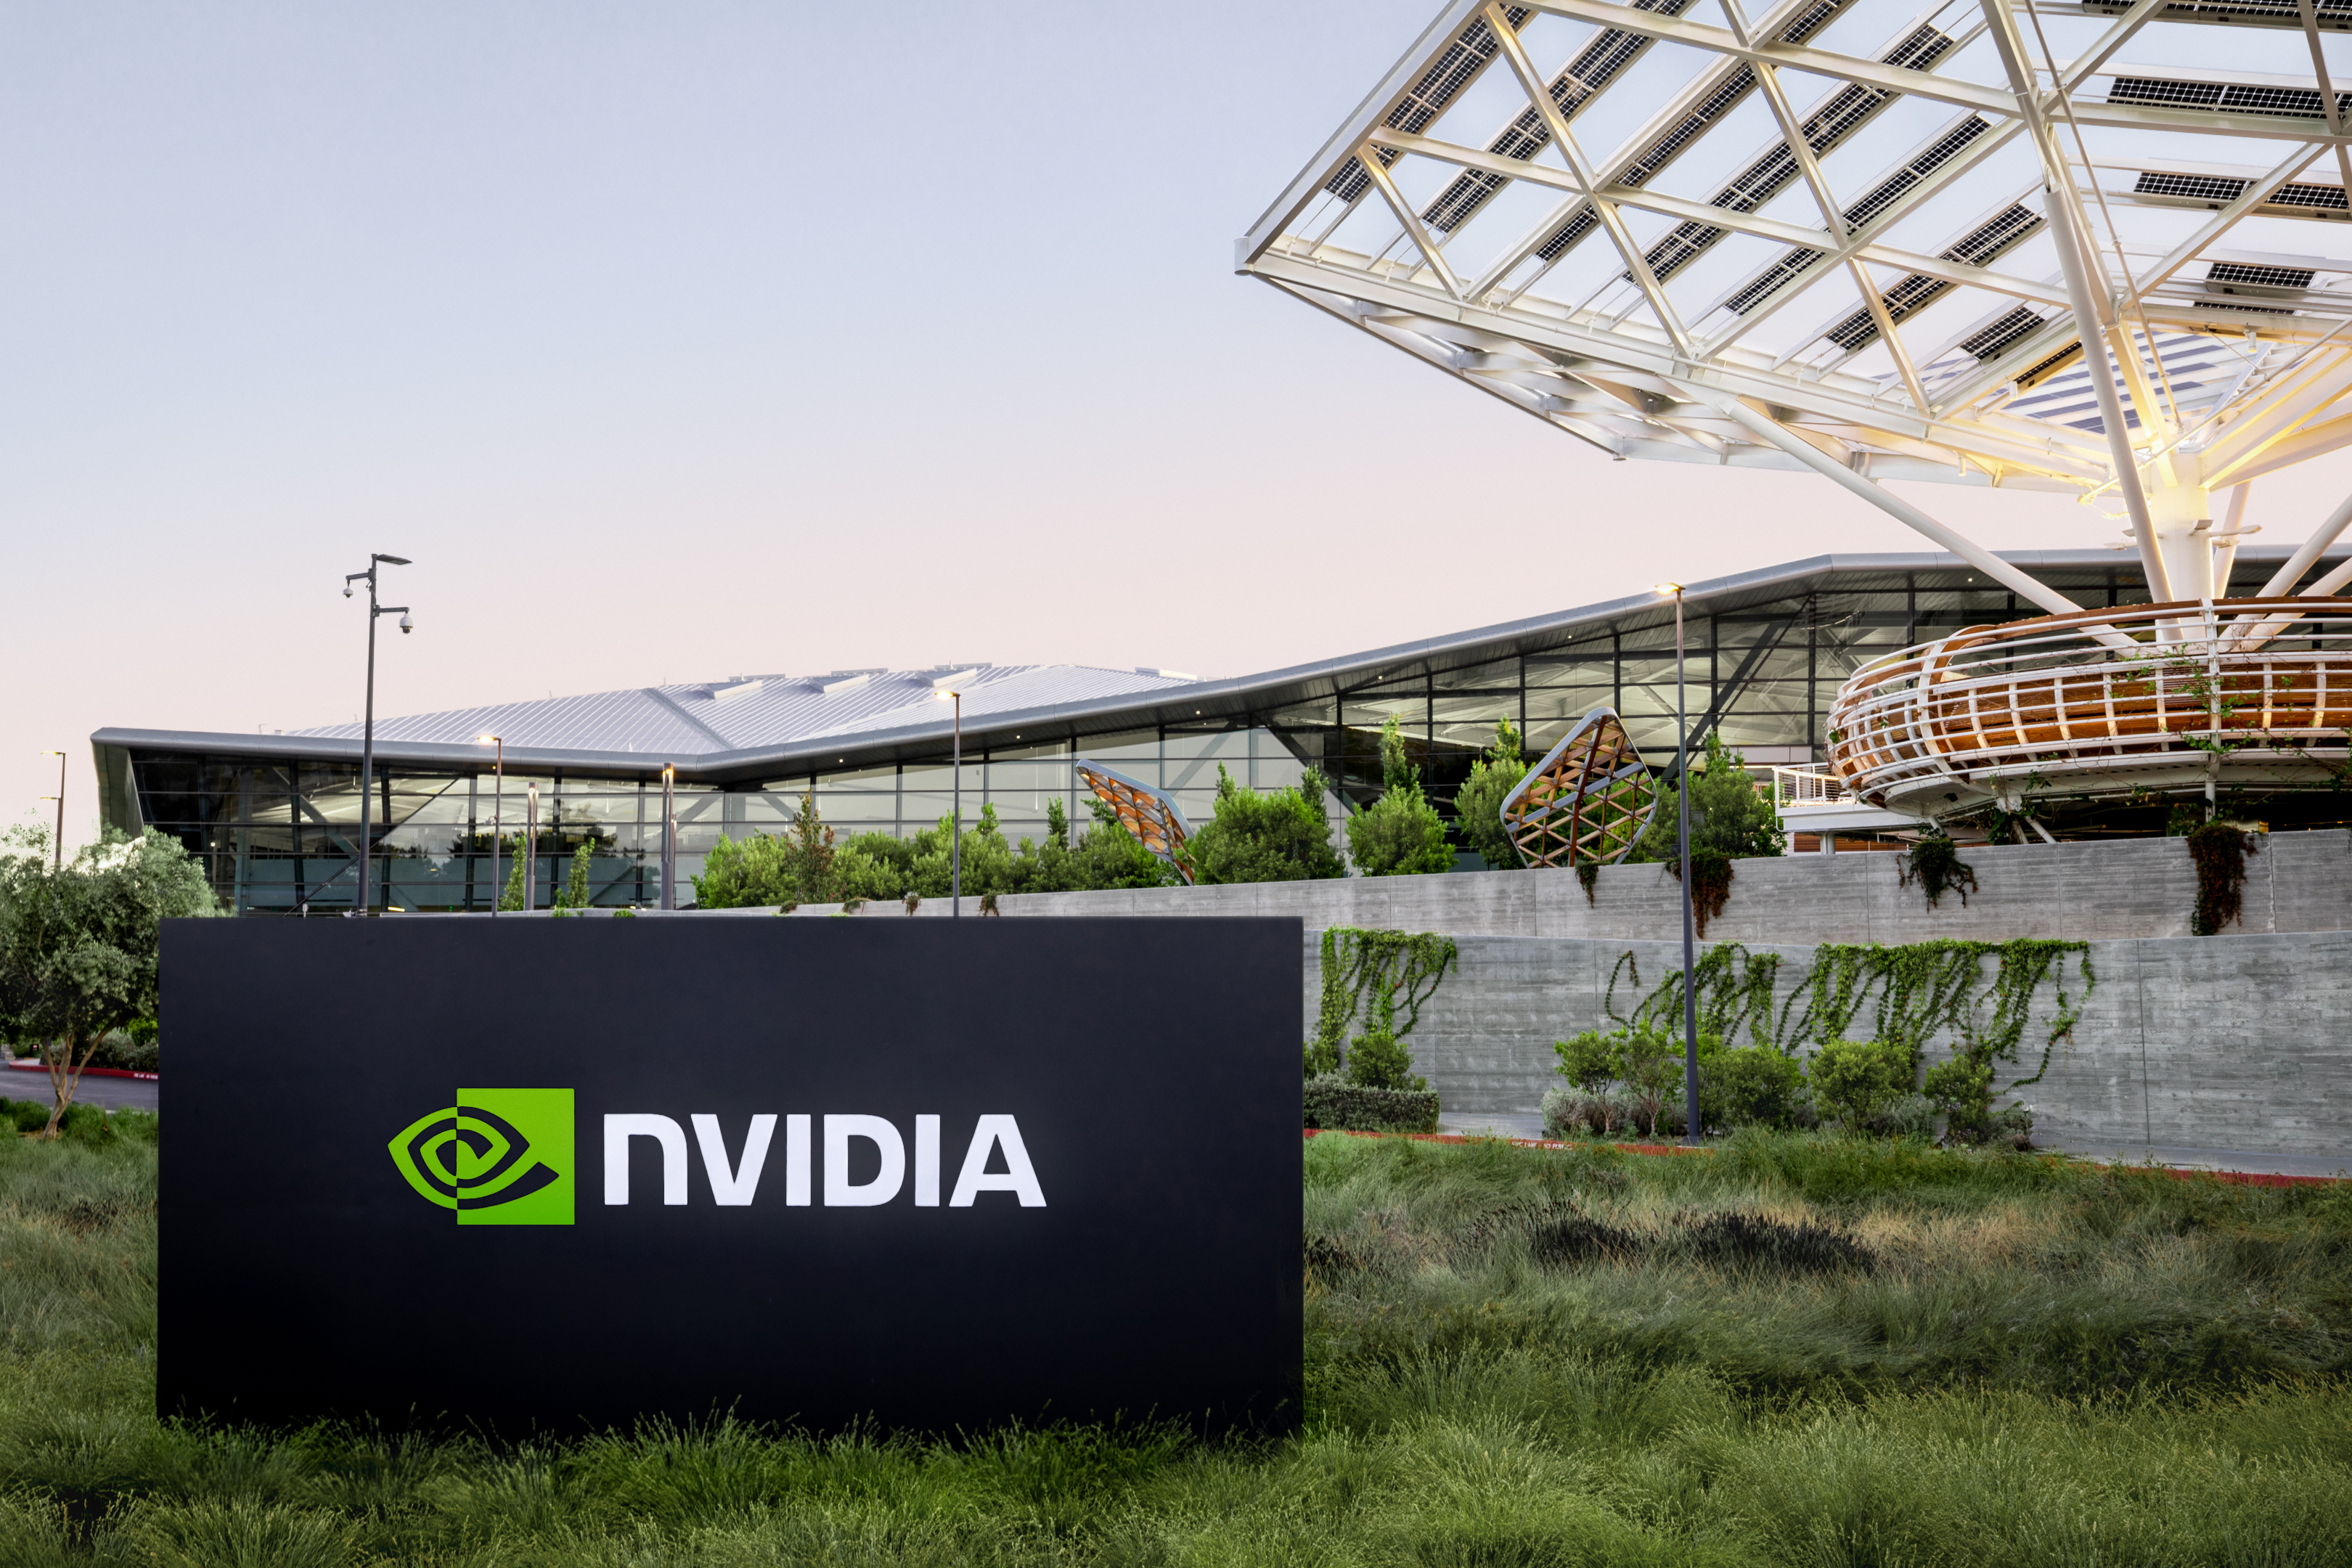 NVIDIAs Marktwert übersteigt inmitten des KI-Hypes erstmals 2 Billionen Dollar